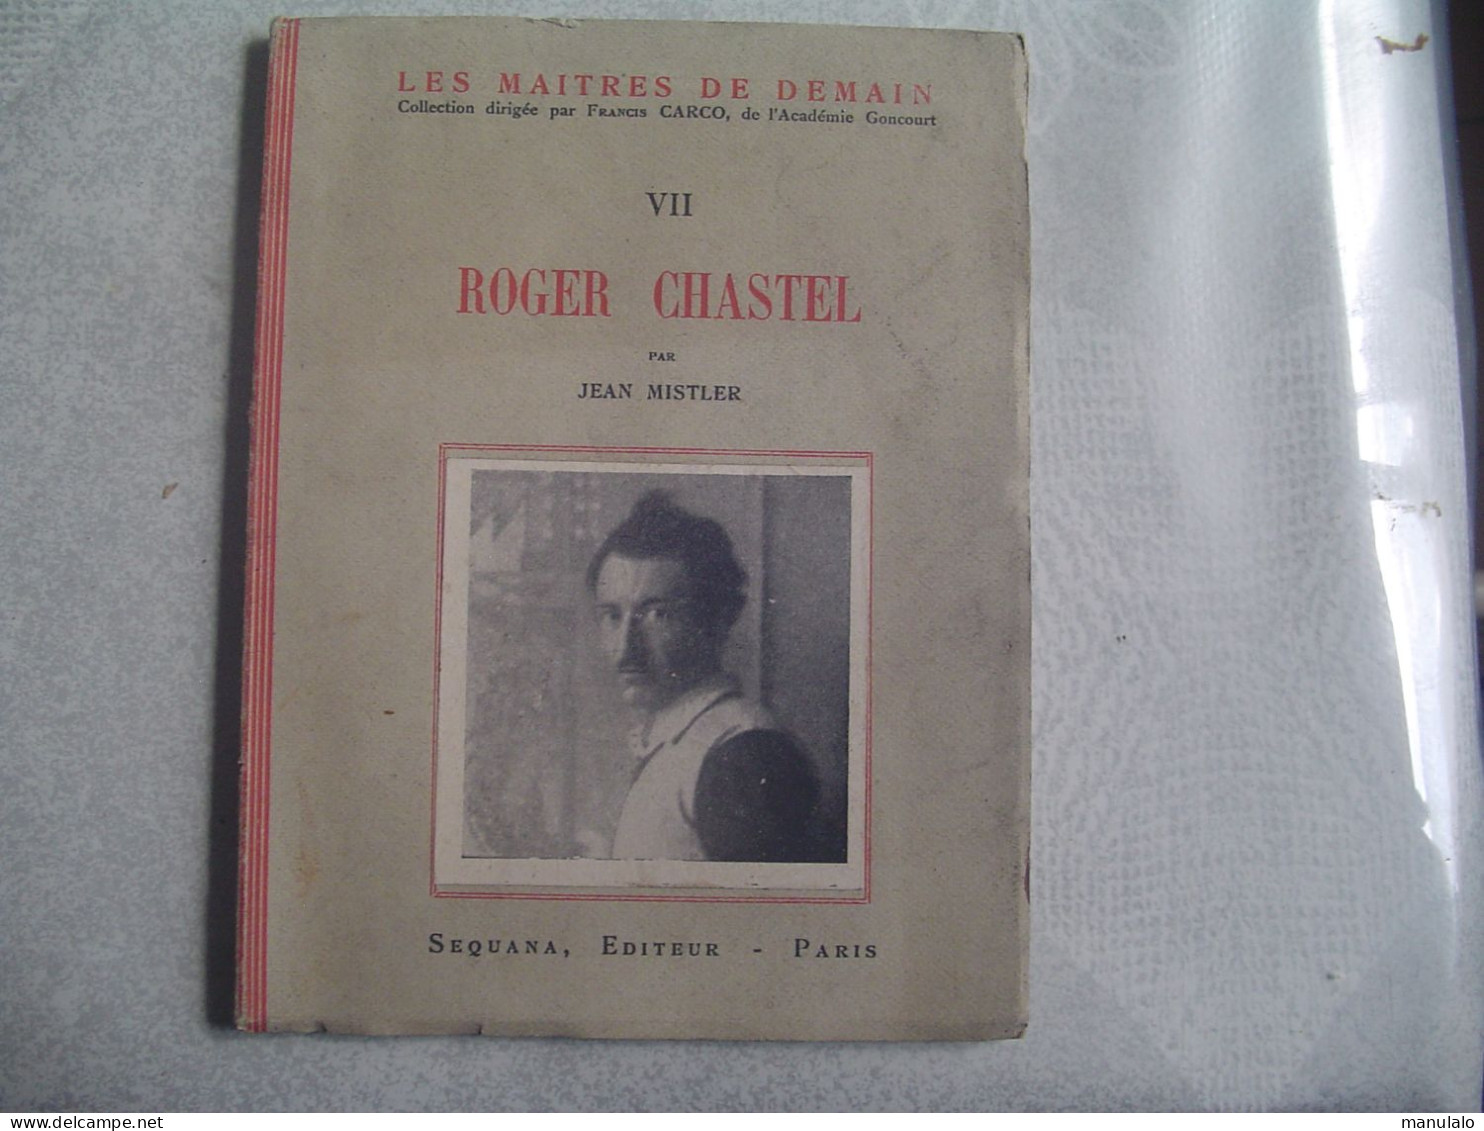 Livre De Roger Chastel Par Jean Mistler, éditeur Sequana Paris, Imprimer En Mars 1943 - Biographie